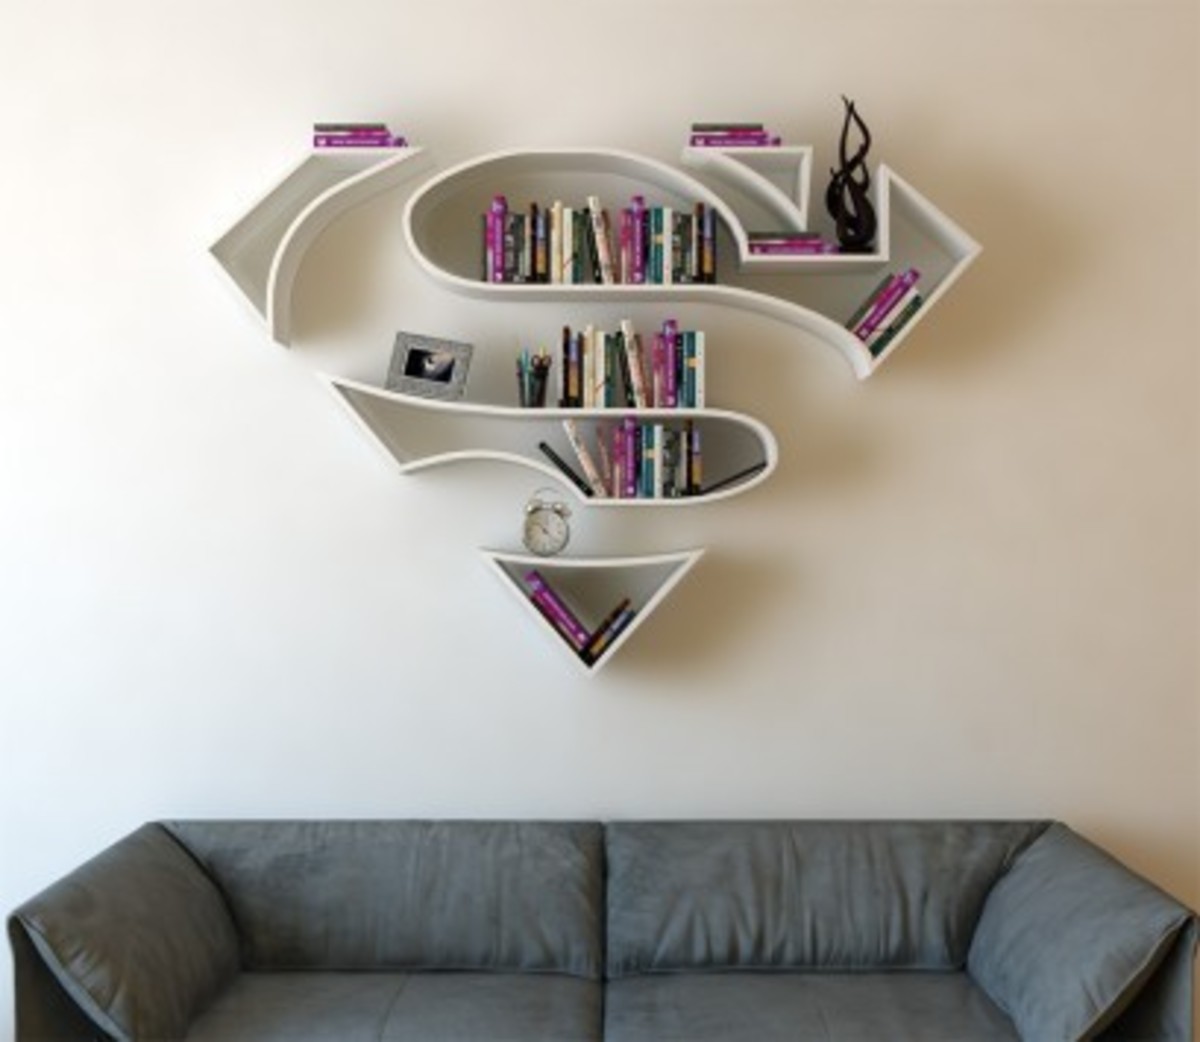 Μα ολόκληρος Superman… βιβλιοθήκη; Τούρκος με μεγάλη φαντασία! (ΦΩΤΟ)